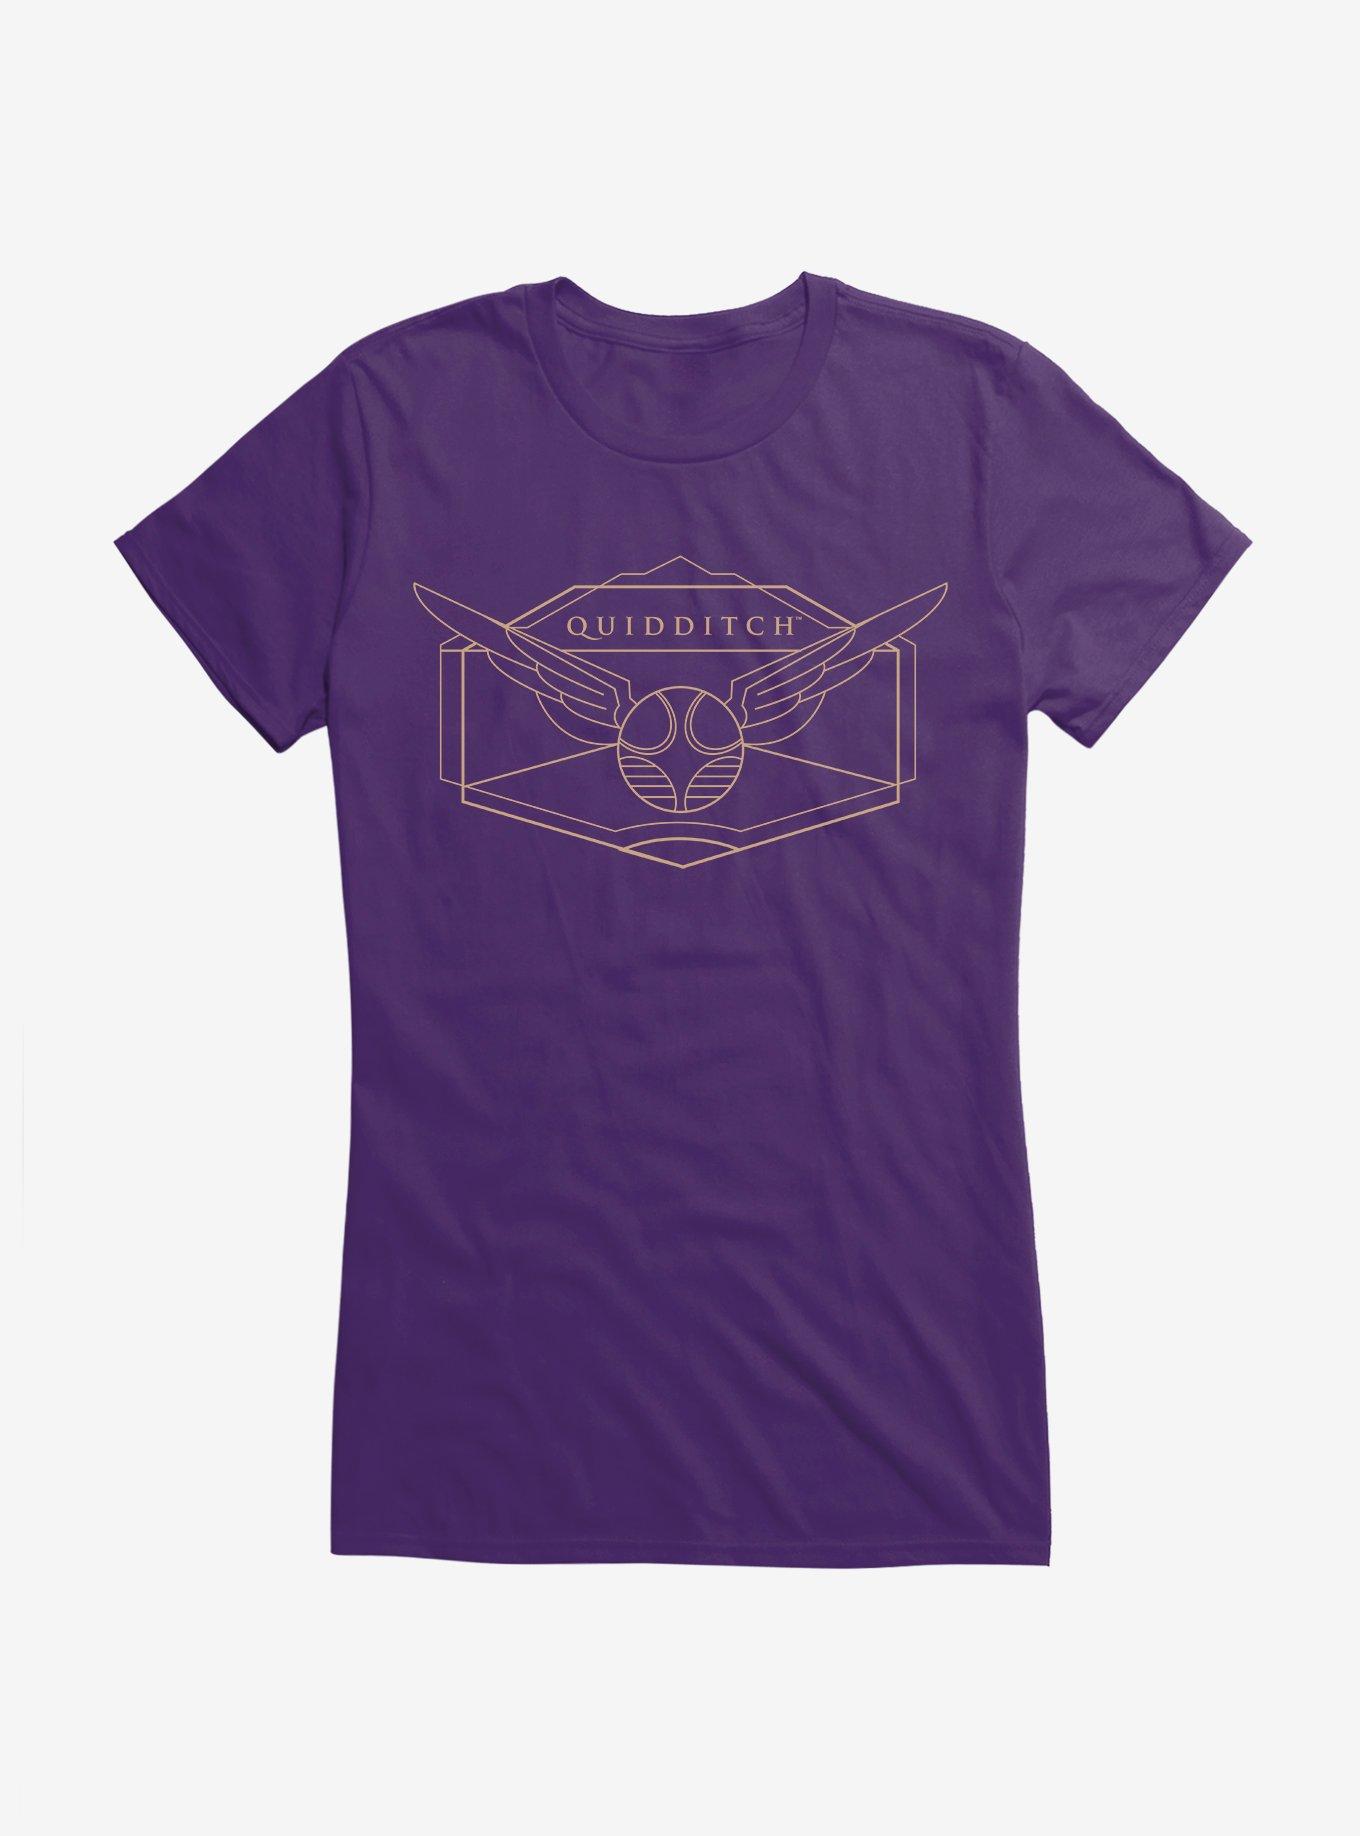 Harry Potter Golden Magic Quidditch Emblem Girls T-Shirt, PURPLE, hi-res